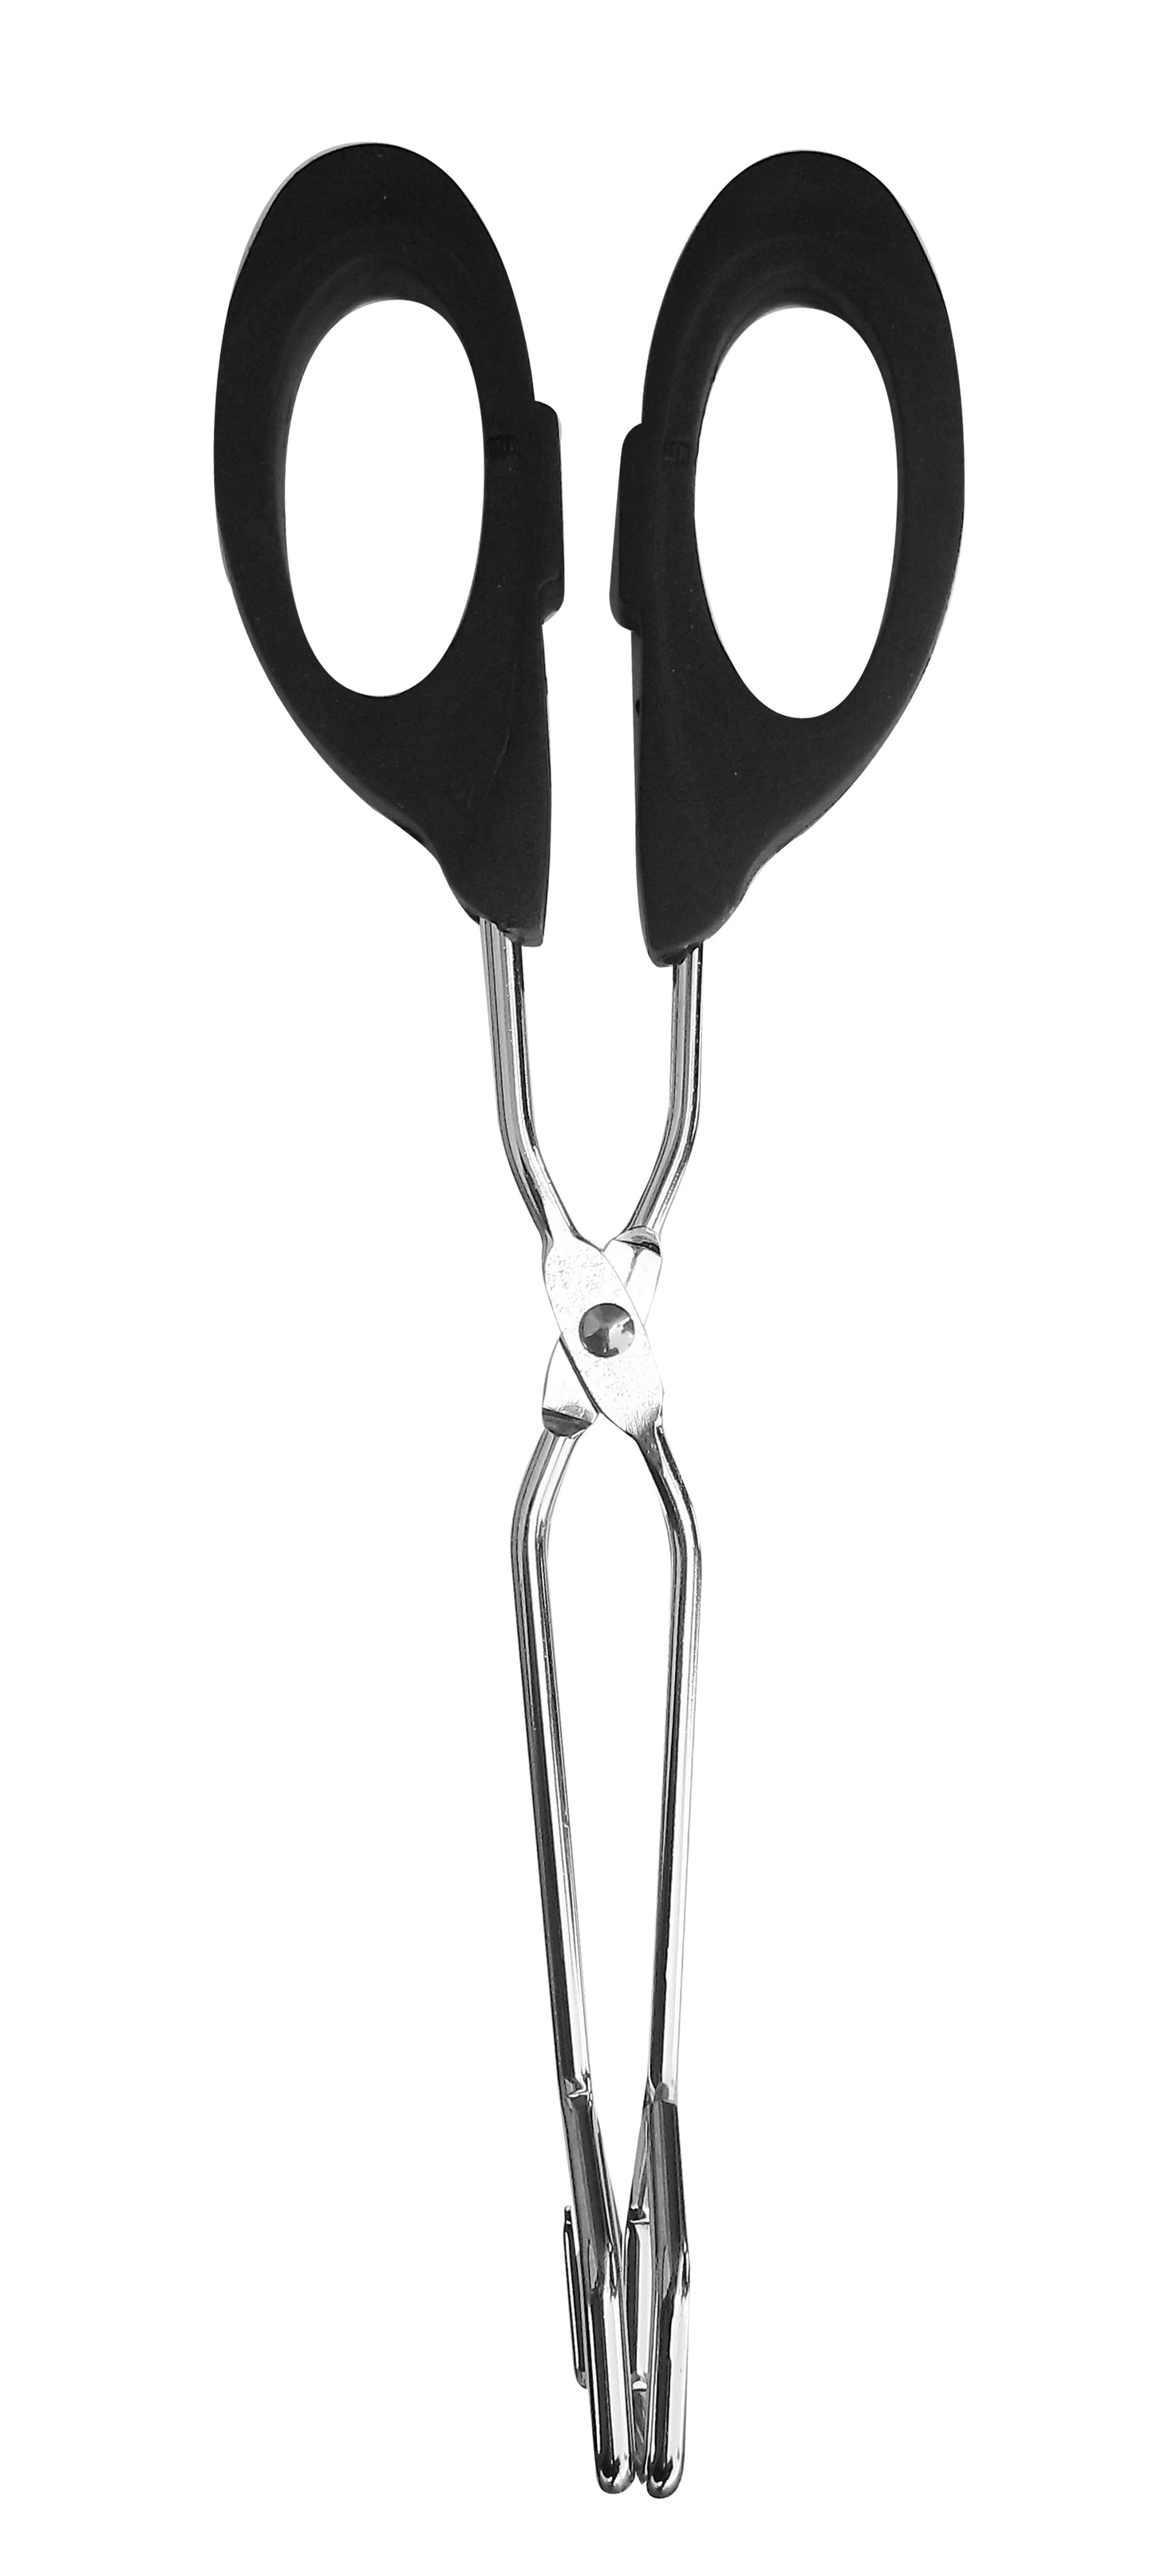 
                  
                    Bene Casa 10-inch metal tong, wide tip, heat-resistant handle, scissor design
                  
                